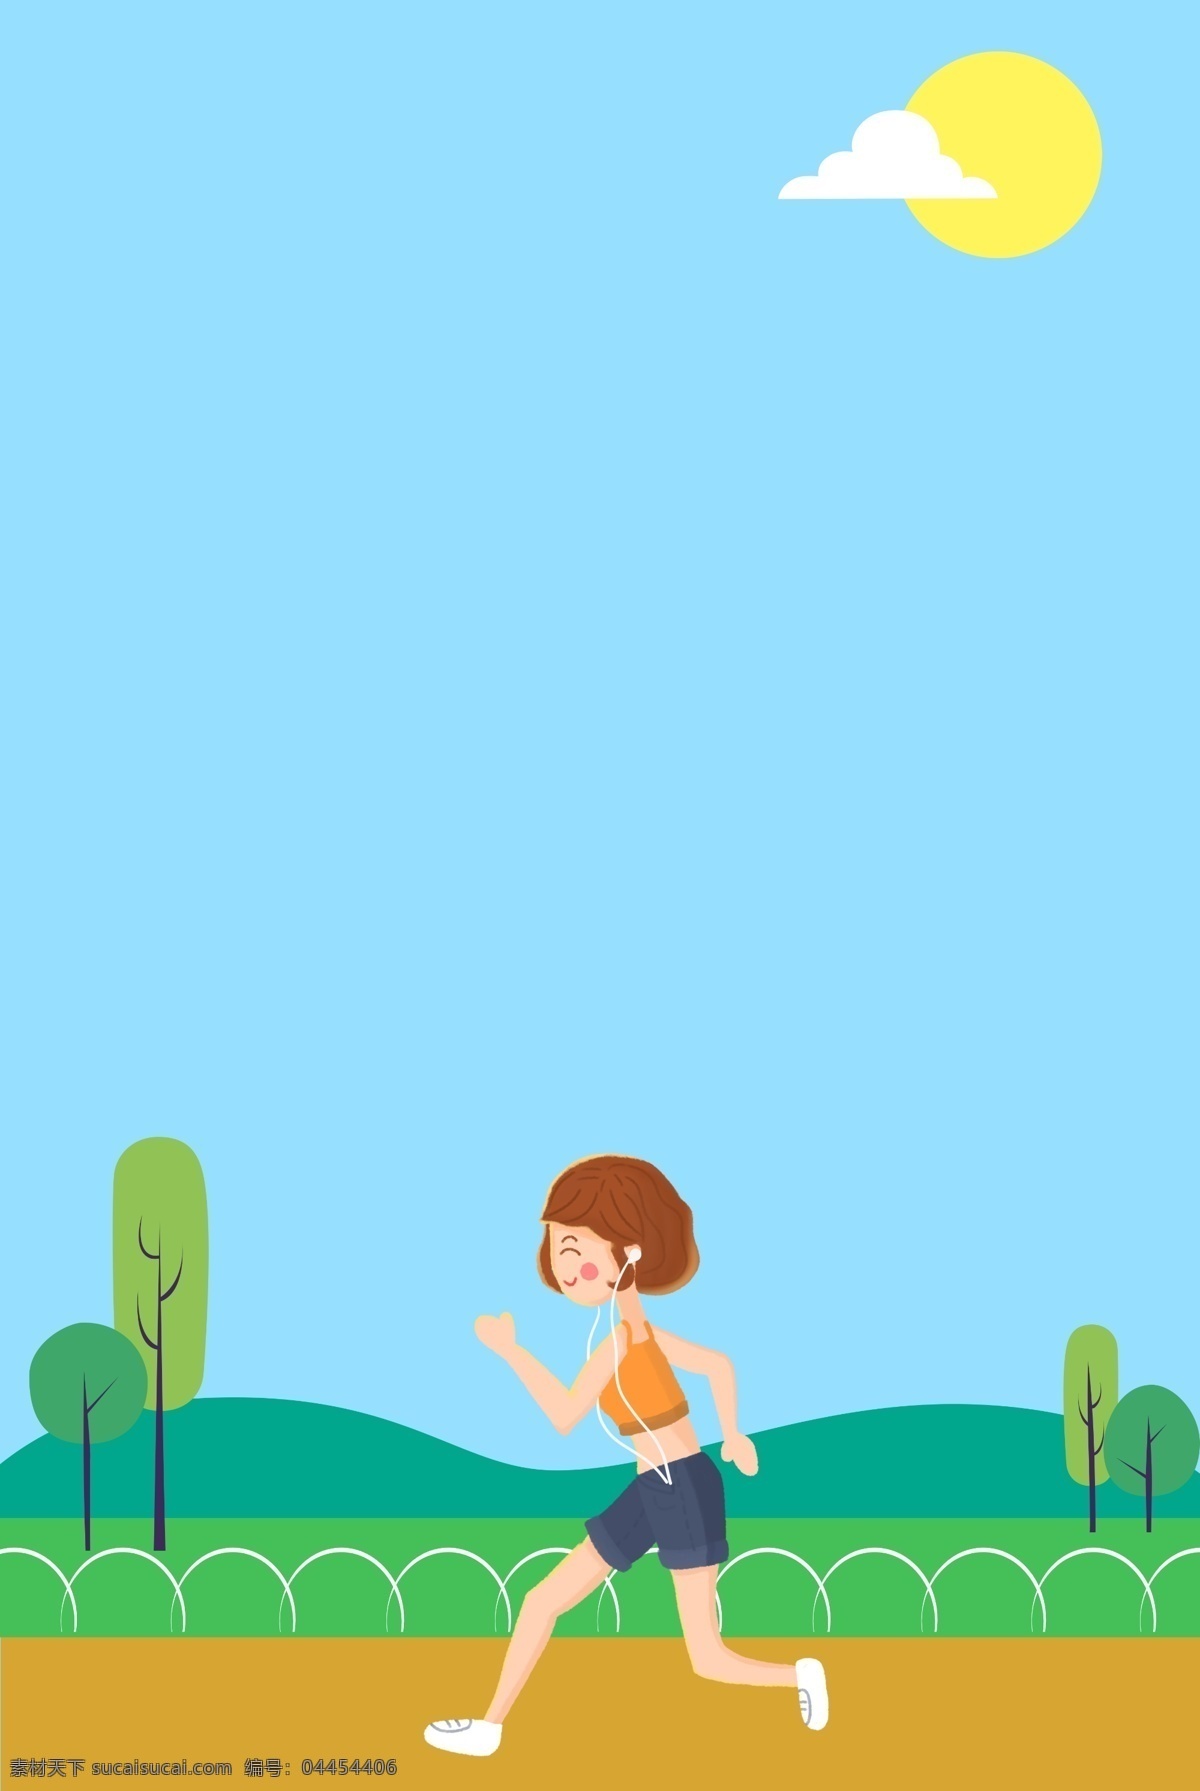 蓝色 卡通 扁平化 奔跑 广告 背景 跑步 运动 健身 健康 锻炼 海报背景